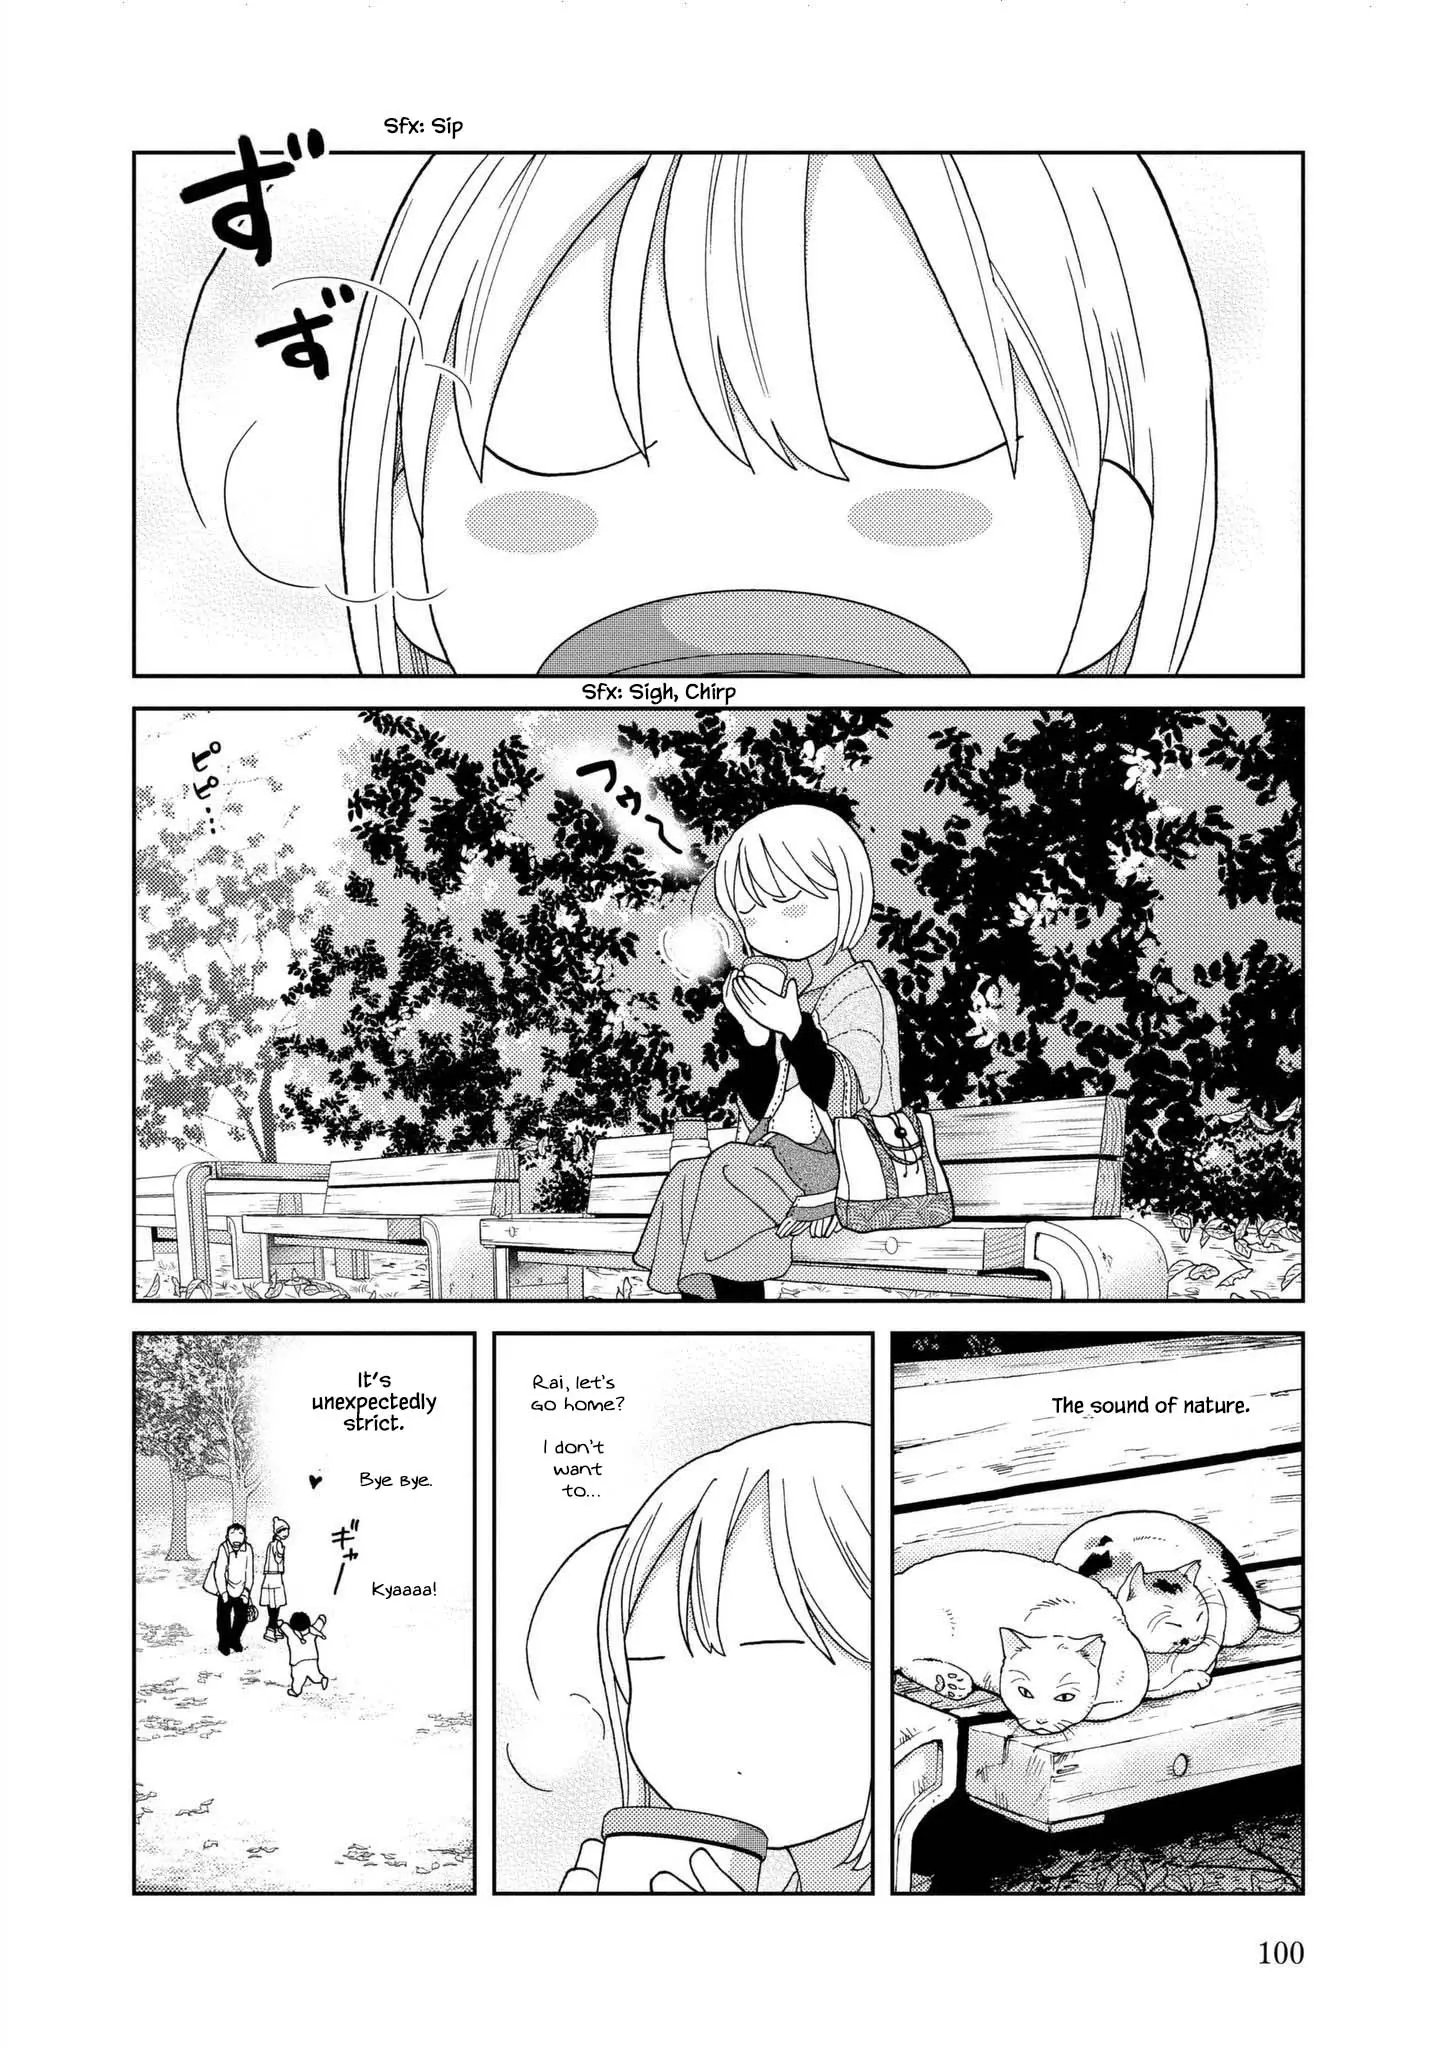 Takako-San - 49 page 8-81092fd3